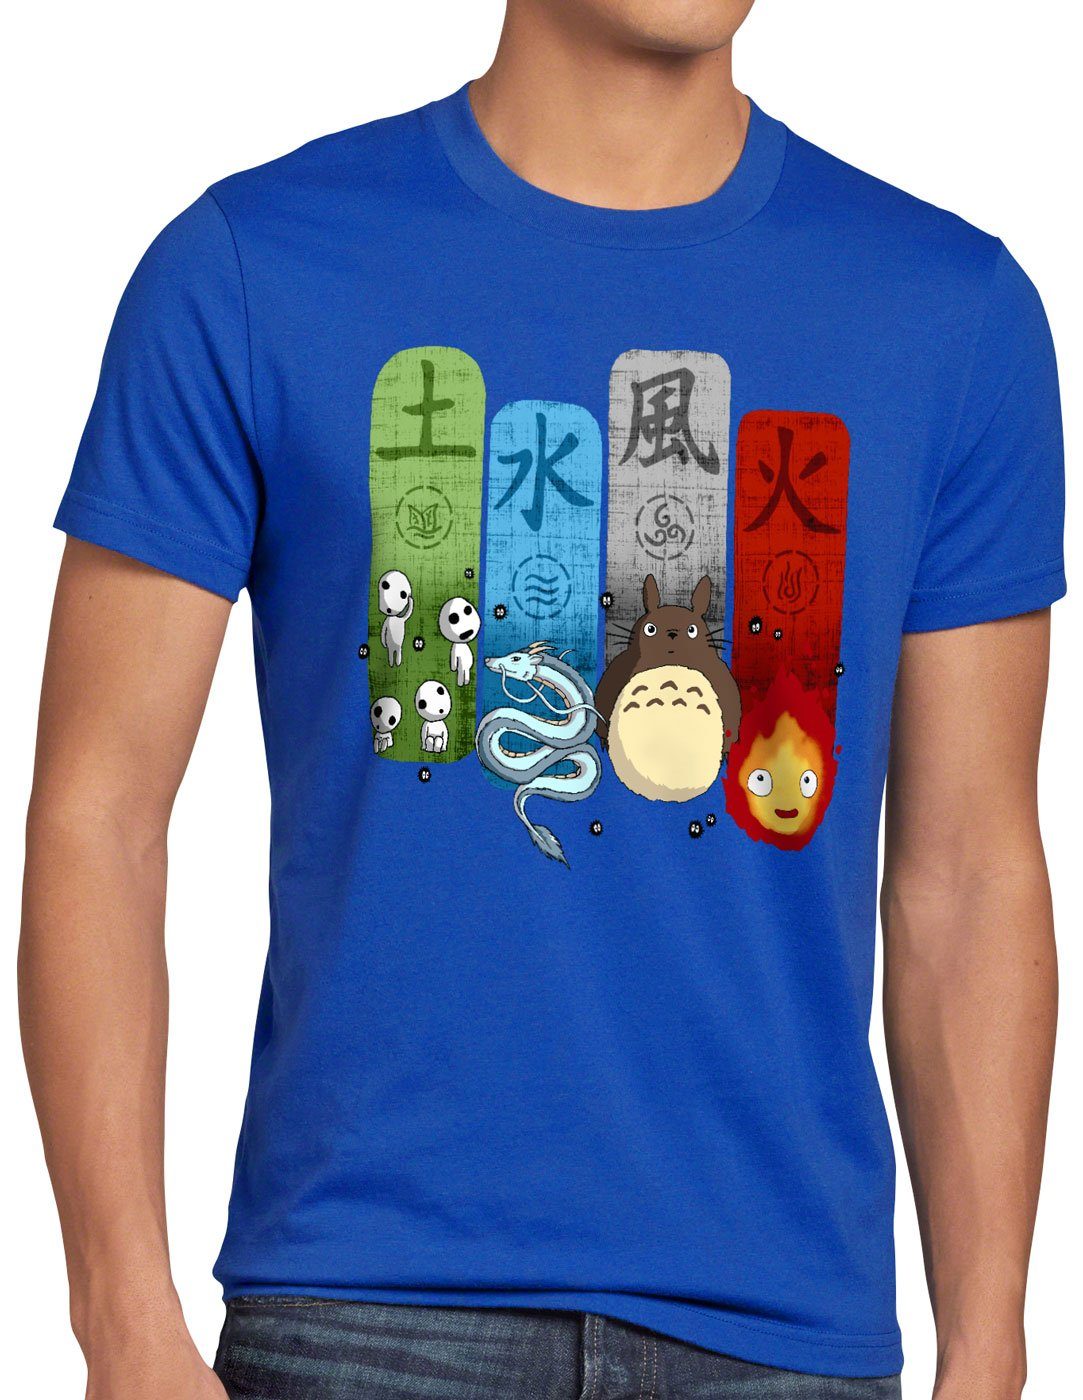 style3 Print-Shirt Herren T-Shirt Ghibli Family totoro mononoke schloss chihiro film blau